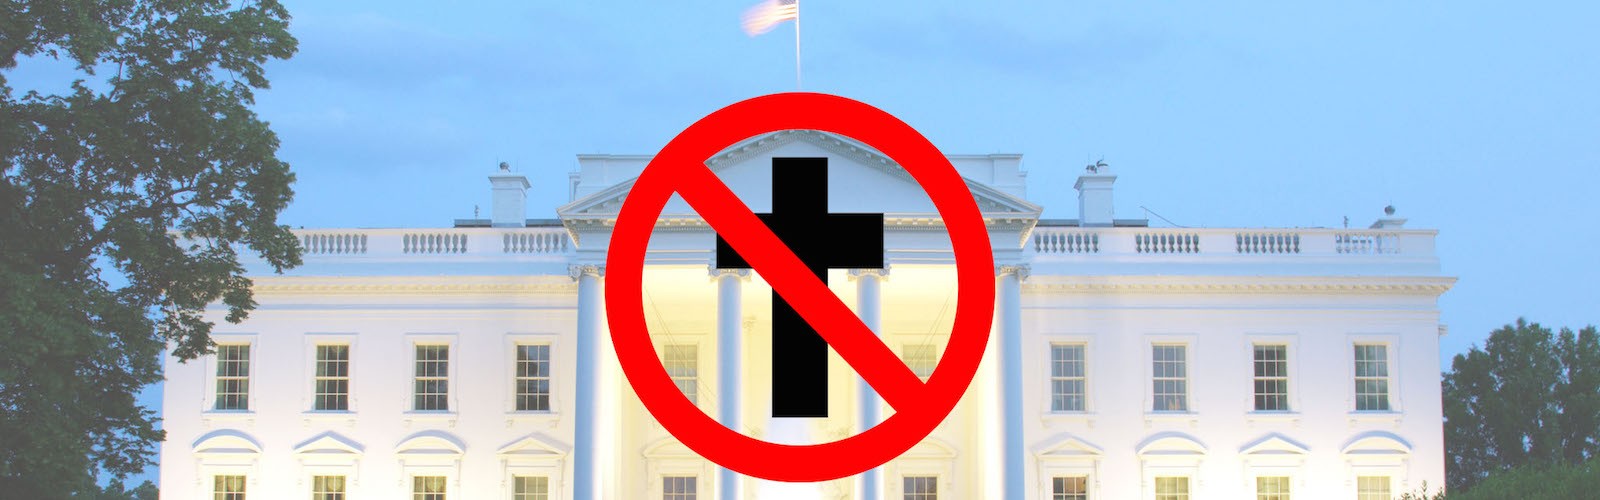 white house anti-christian